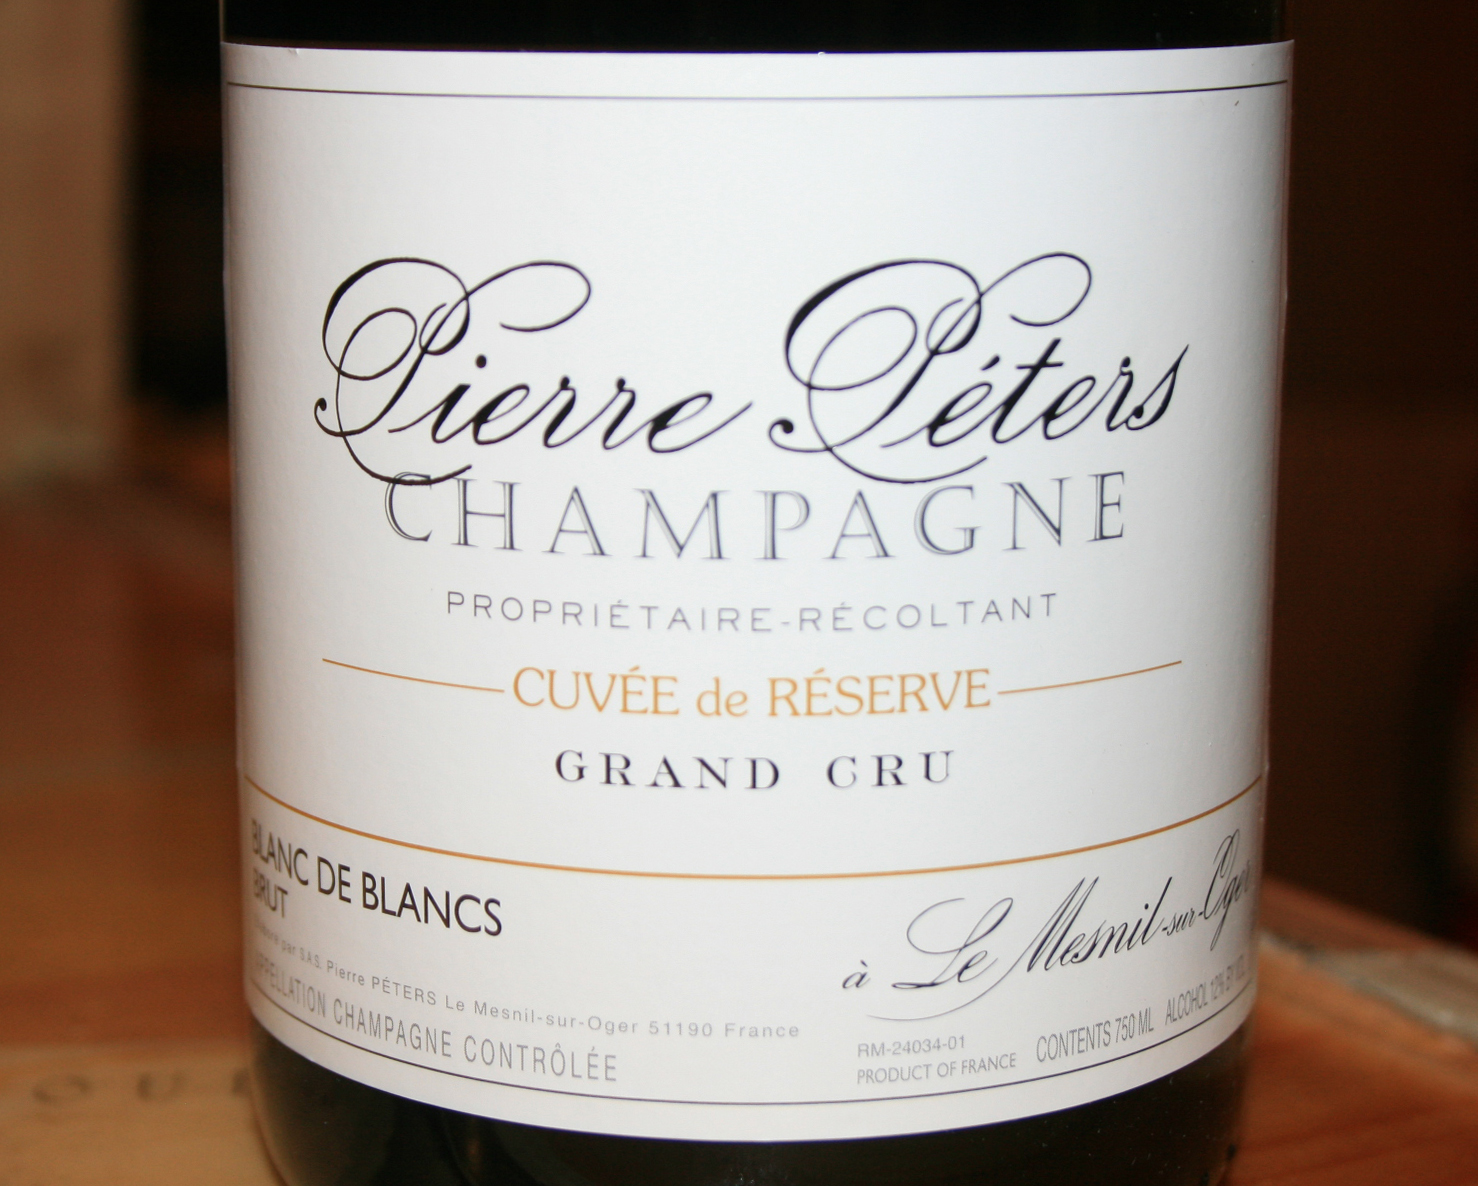 NV Pierre Peters Cuvee de Reserve Blanc de Blancs Champagne Brut - click for full details